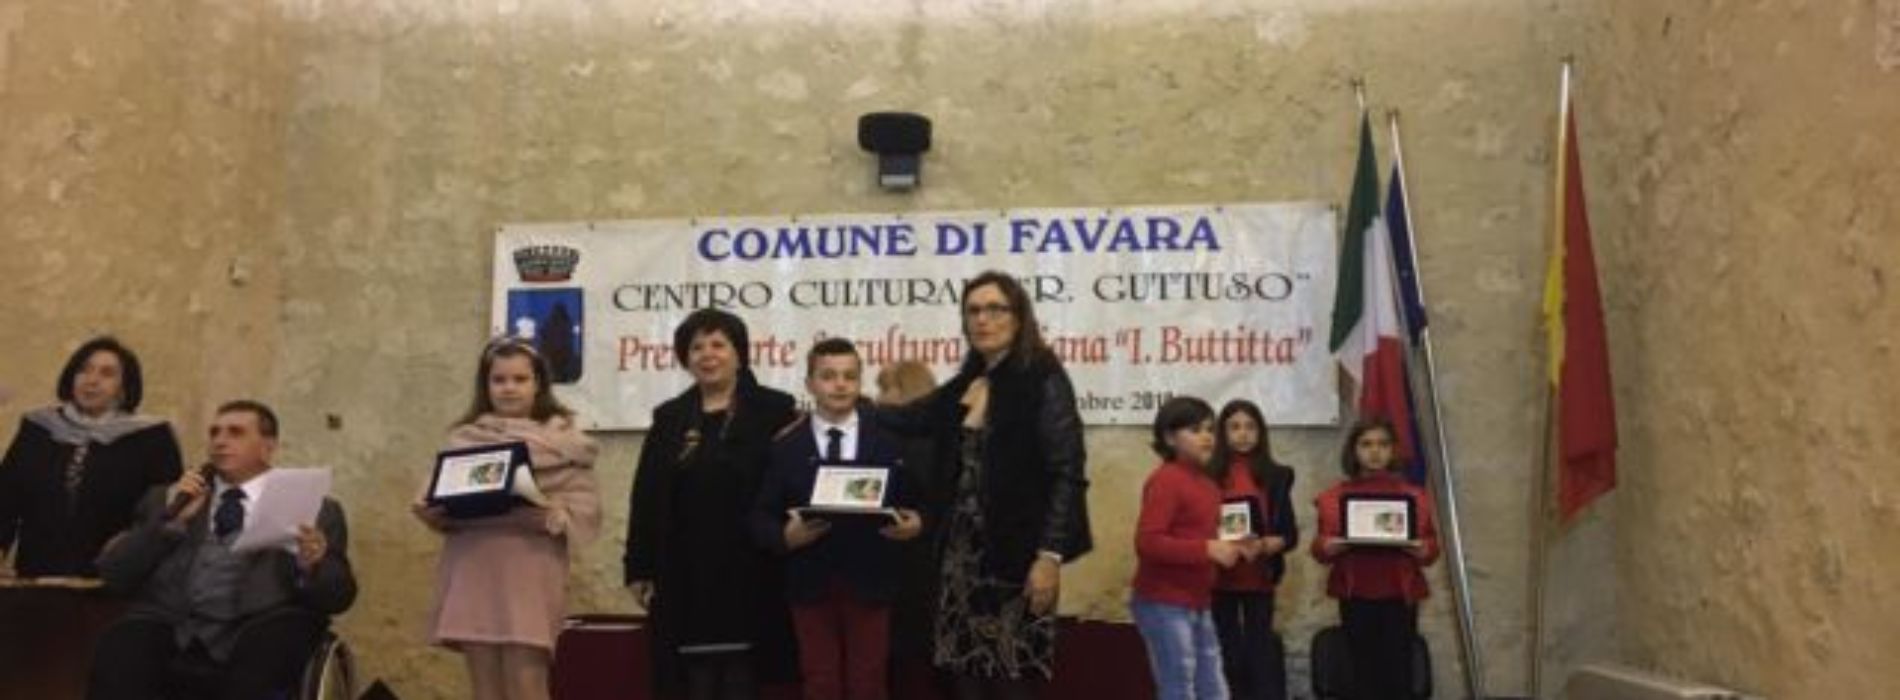 BARRAFRANCA. Premio Arte e Cultura “Ignazio Buttitta” XXI edizione. Primo e secondo posto per due ragazzi di Barrafranca.